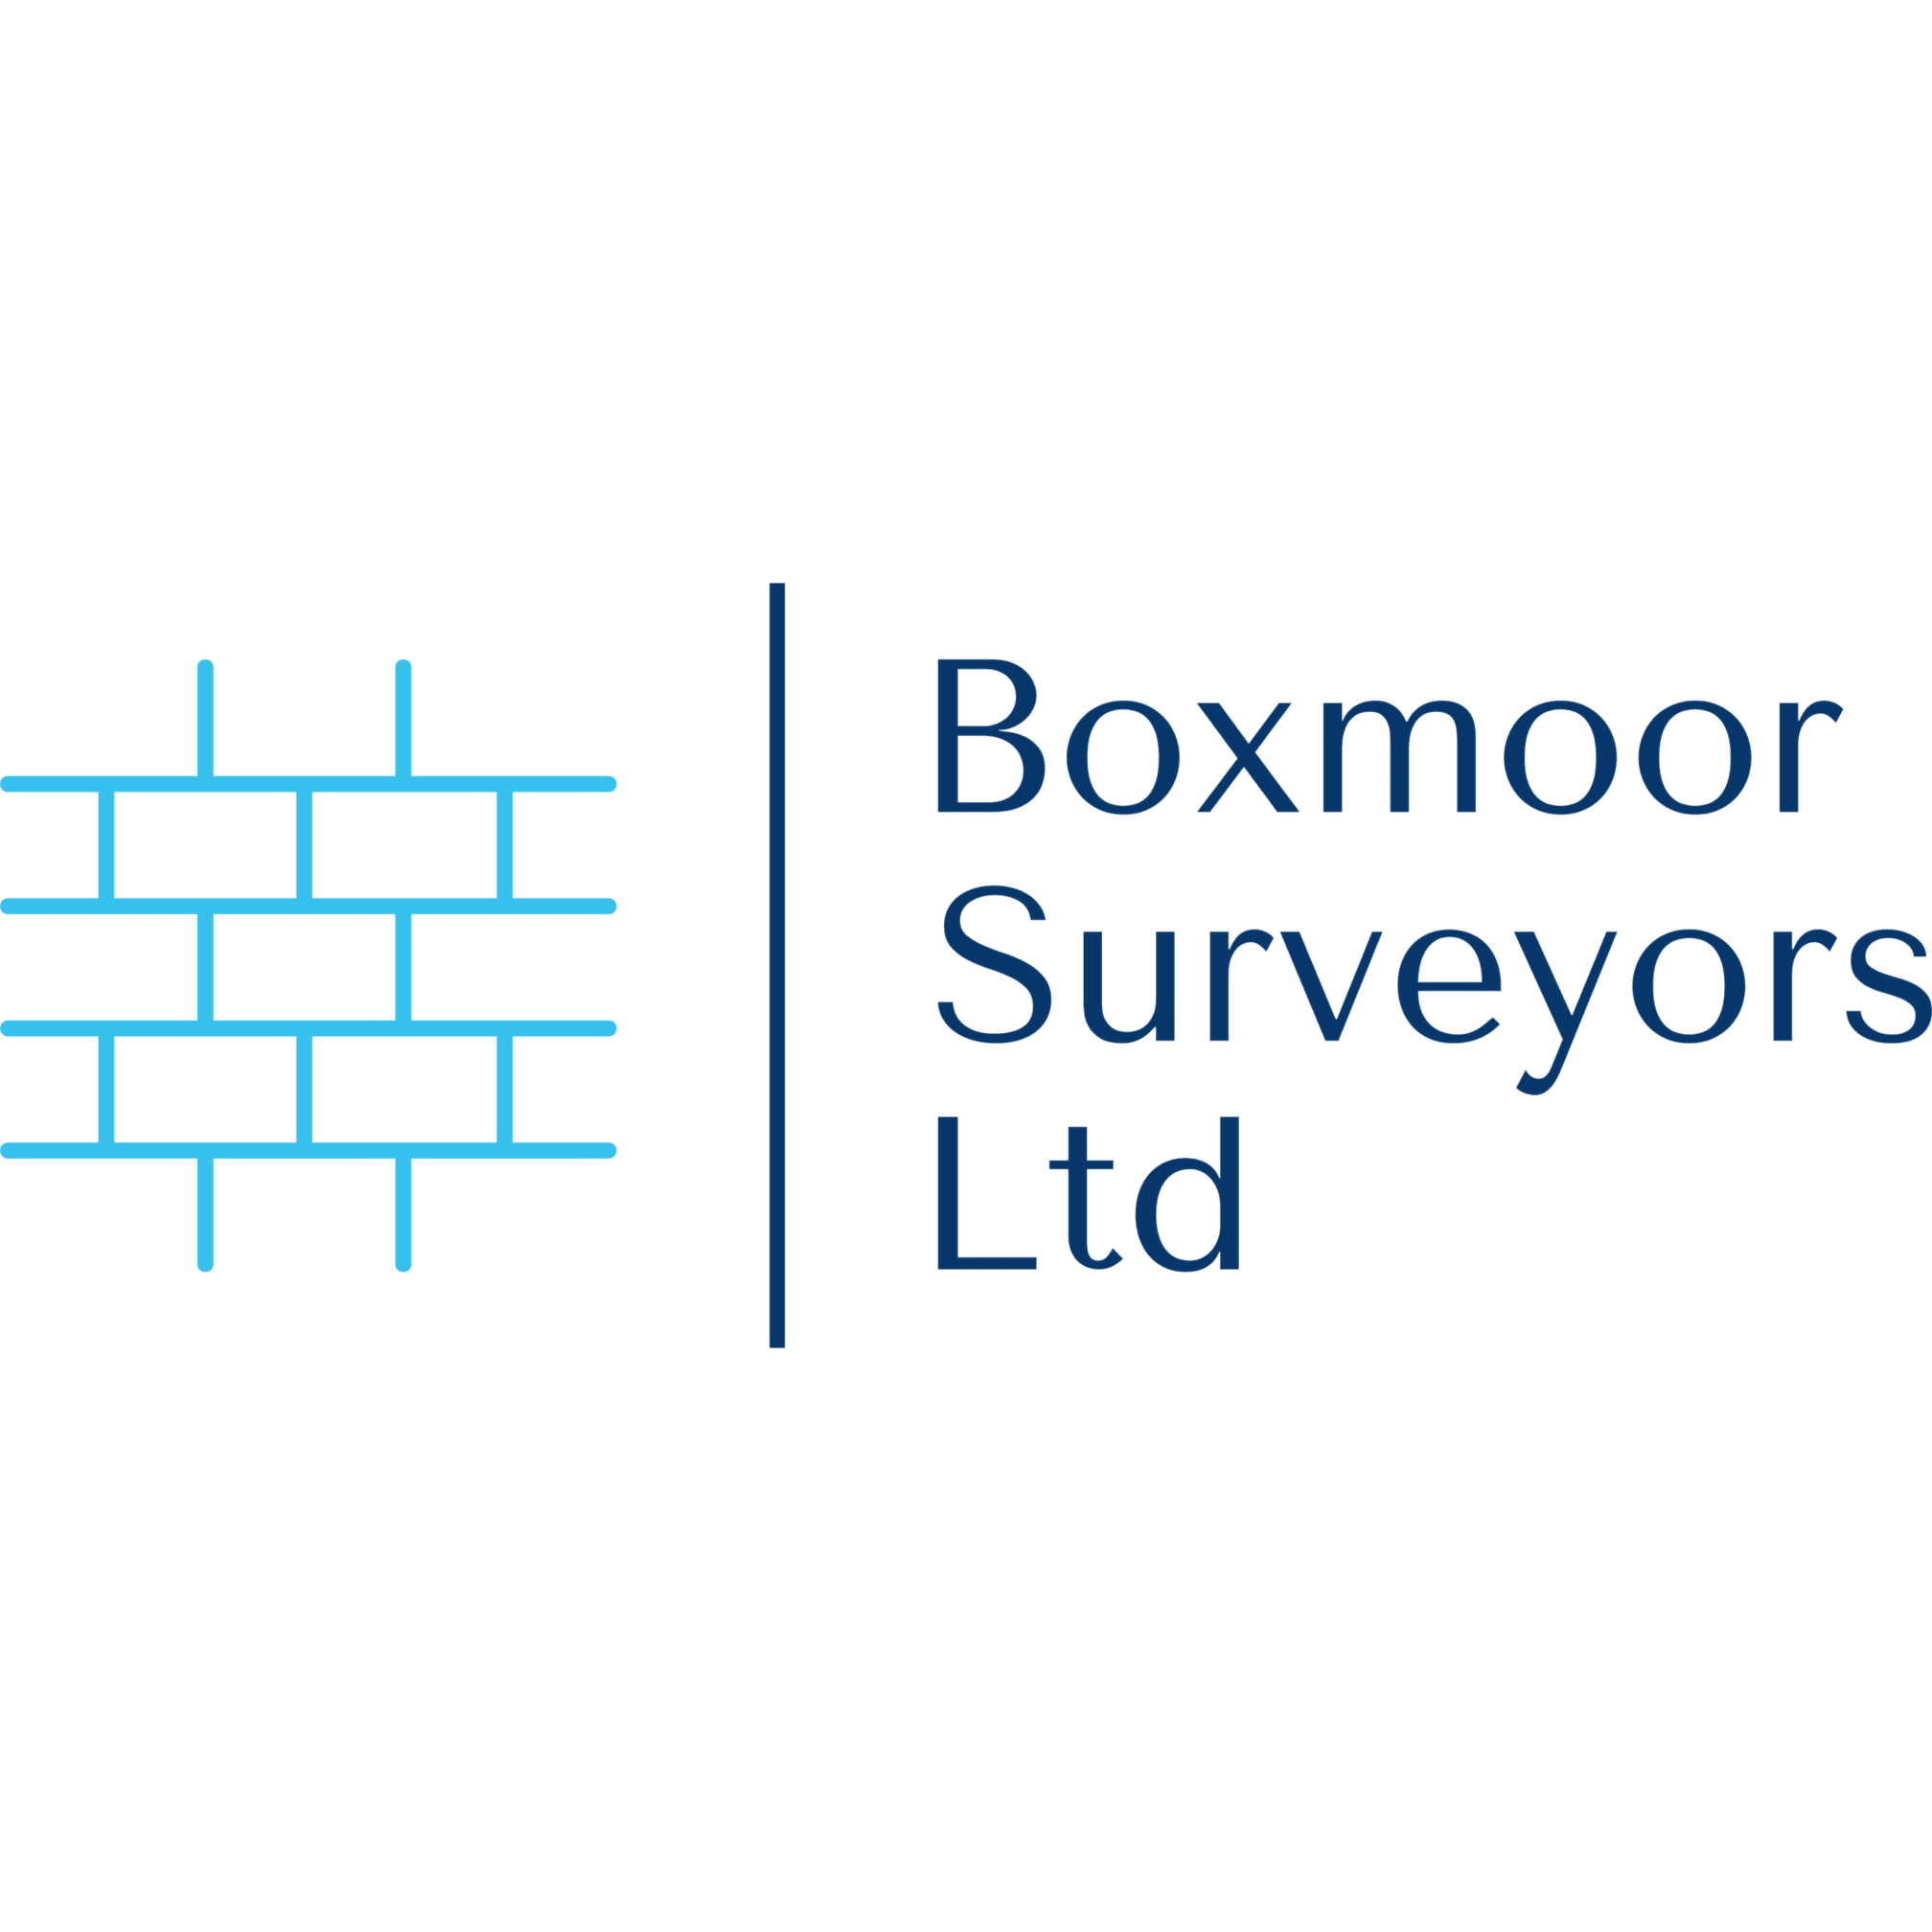 LOGO Boxmoor Surveyors Ltd London 01442 973392